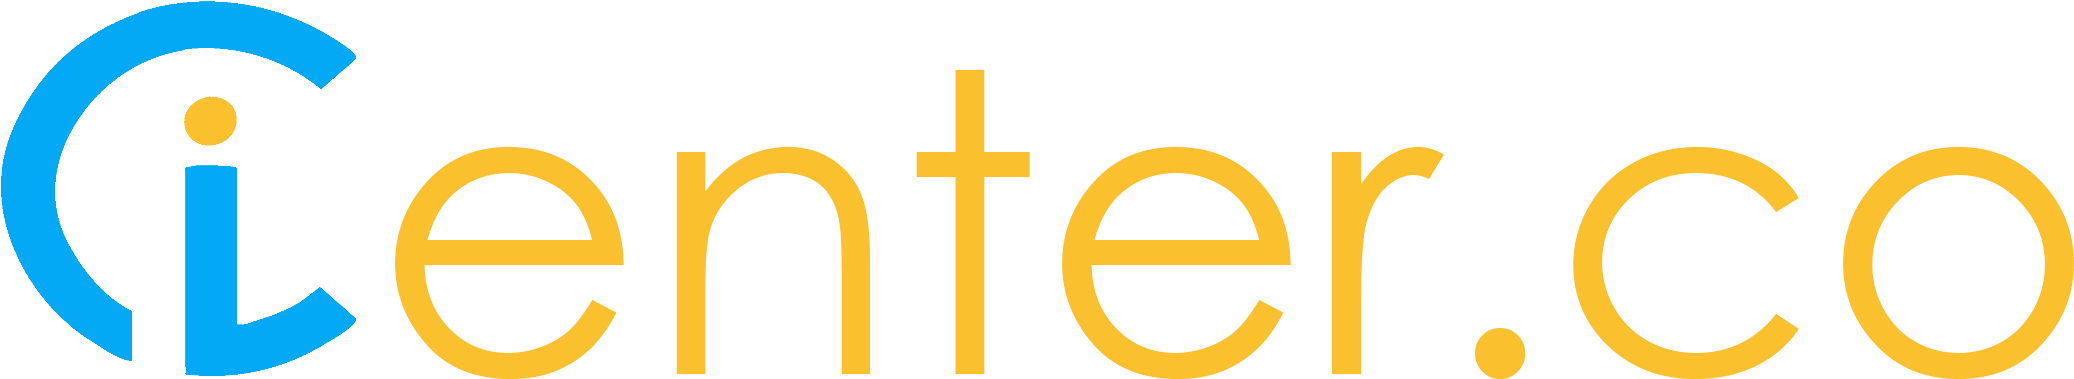 Home - Icenter Co Logo (2125x410)